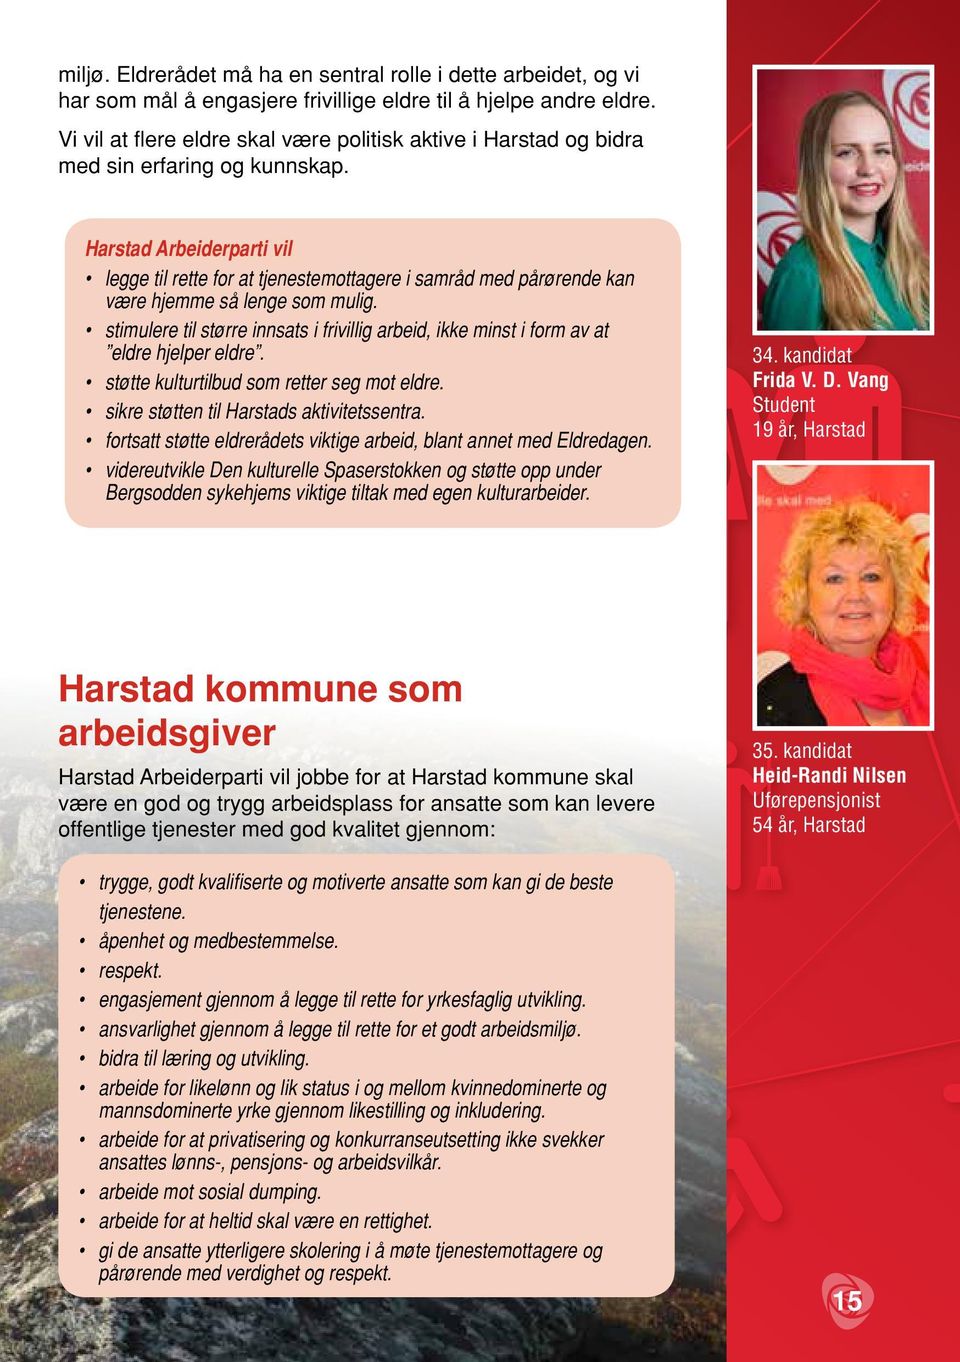 Harstad Arbeiderparti vil legge til rette for at tjenestemottagere i samråd med pårørende kan være hjemme så lenge som mulig.